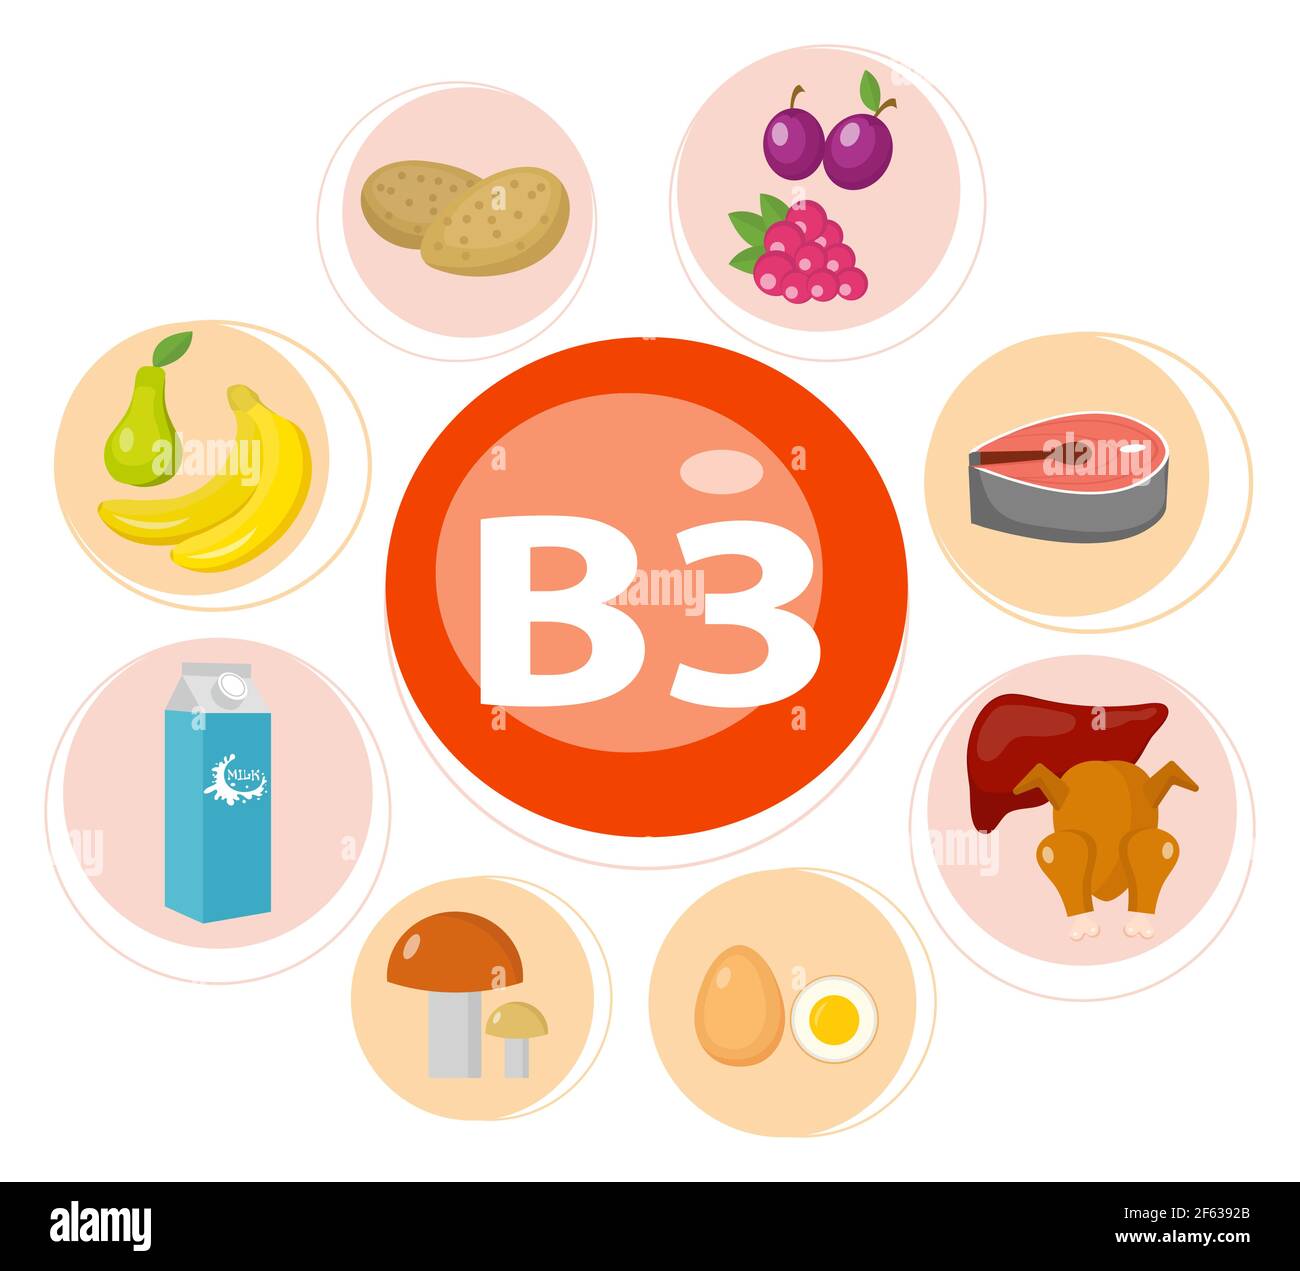 Vitamine und Mineralien Lebensmittel .Vektor-Satz von vitaminreichen Lebensmitteln. Vitamin B3 Fleisch, Spinat, Geflügel, Fisch, Leber, Pilze, Kartoffeln und Erdnüsse. Stock Vektor